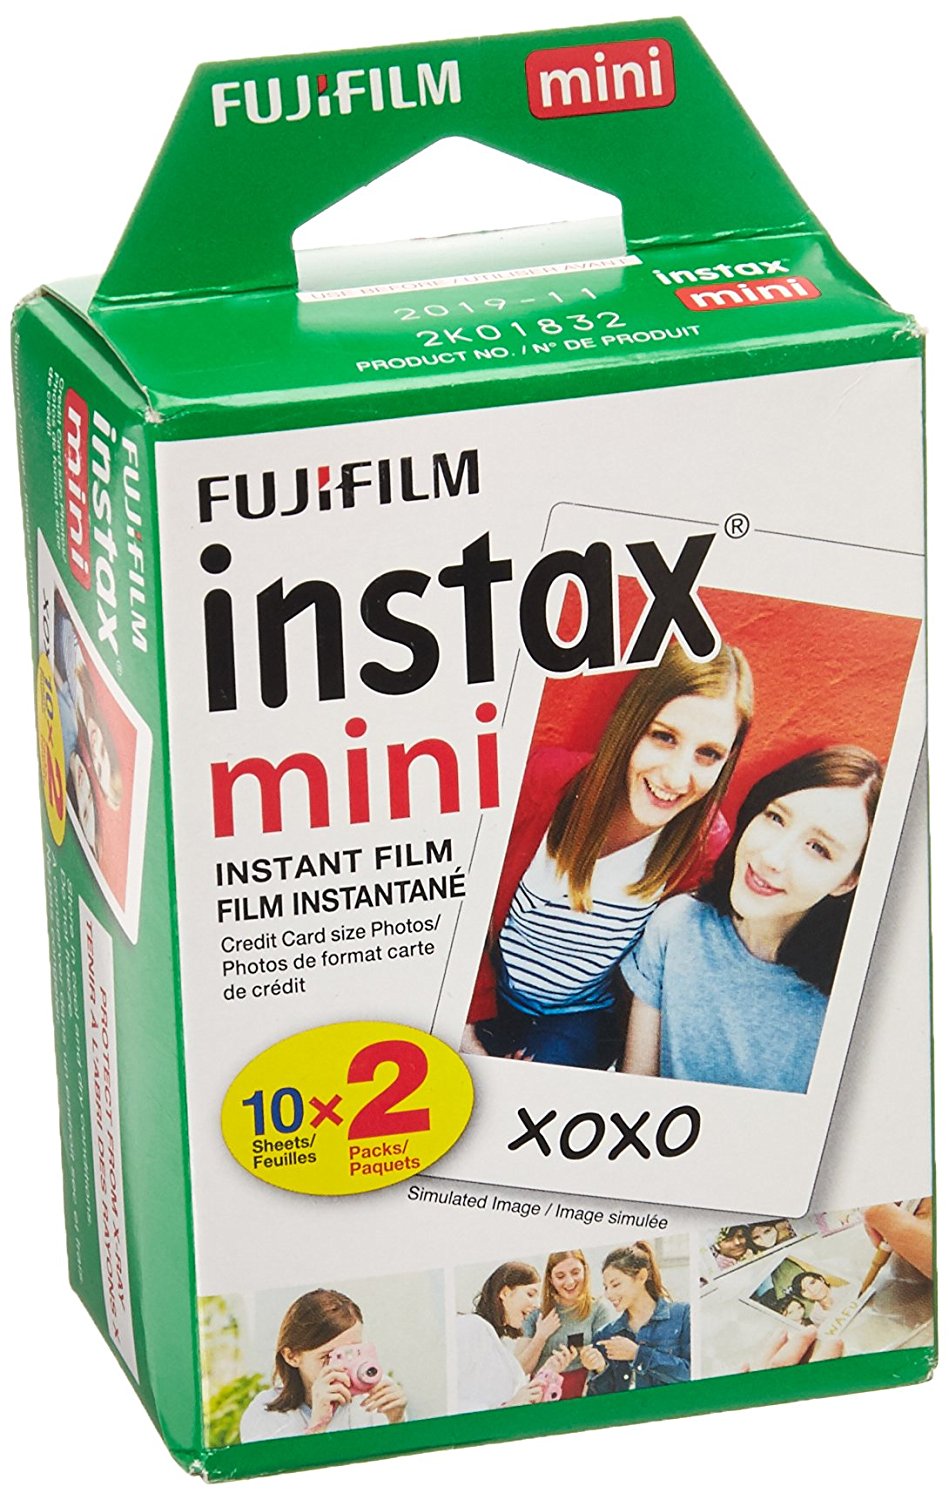 [VENTA] Camara para fotos instantaneas FujiFilm Instax Mini 9 varios colores + rollo 20 fotos Rolloinstax